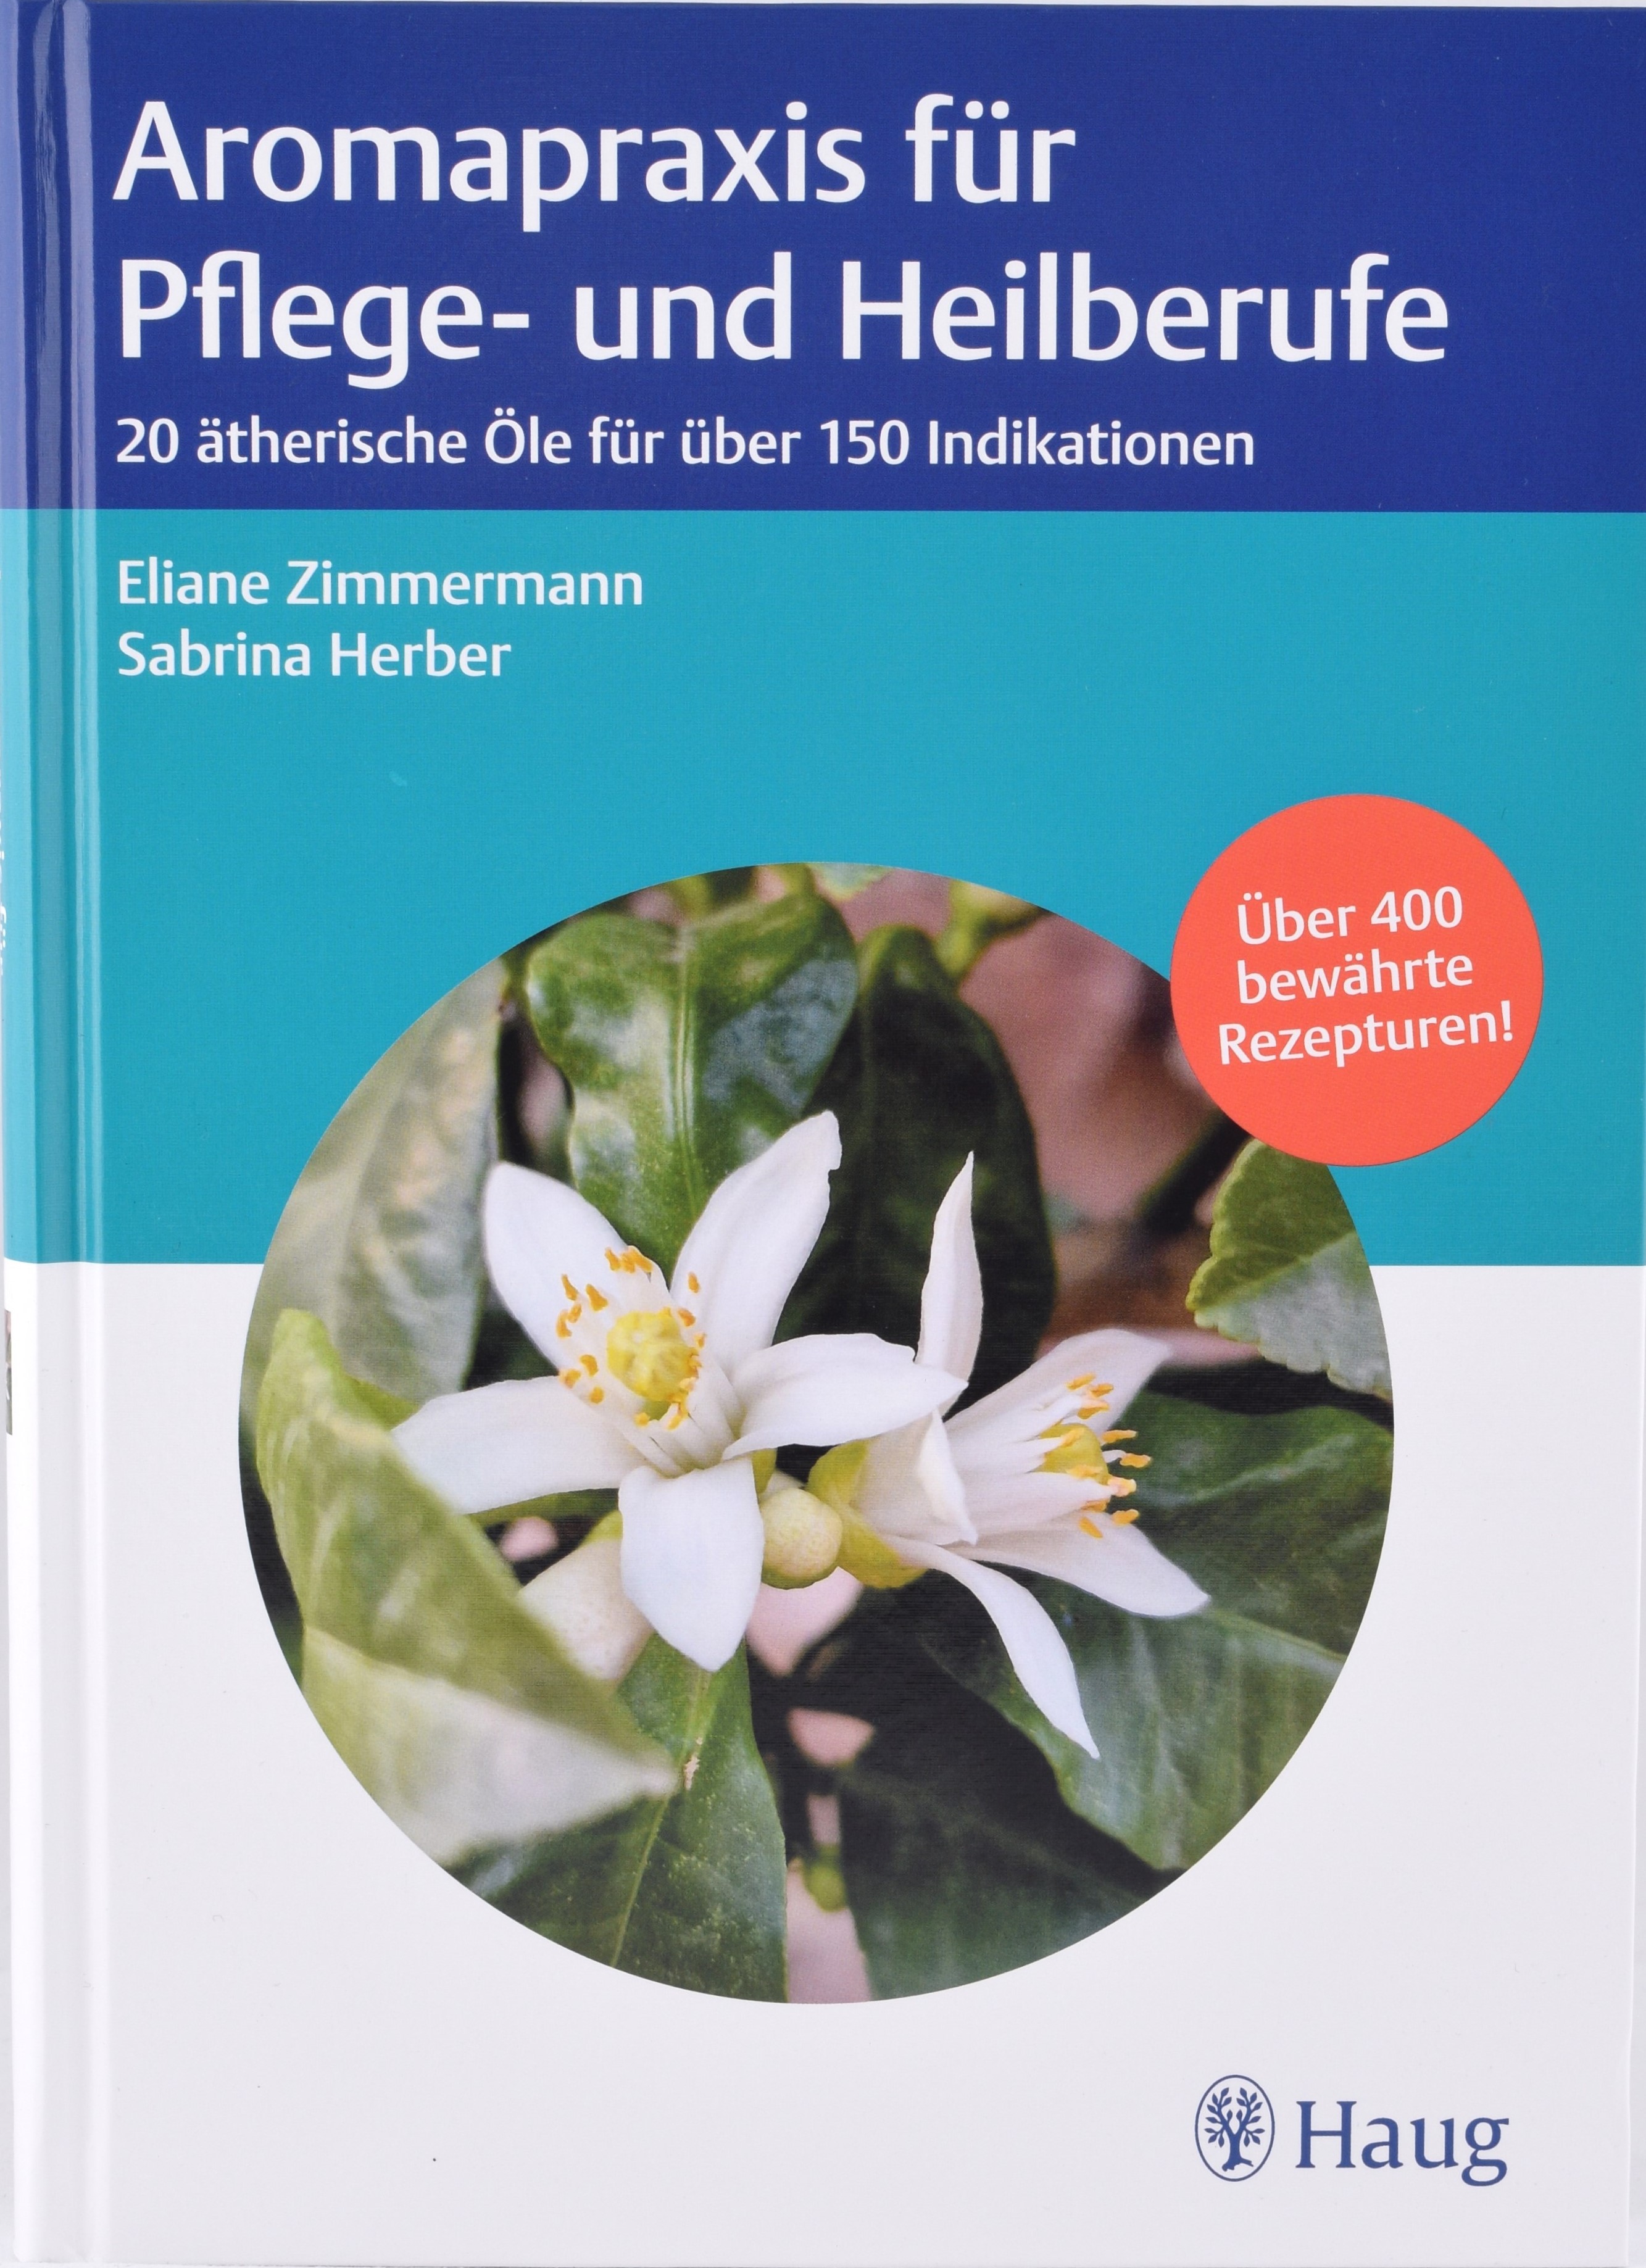 Aromapraxis für Pflege- und Heilberufe 20 ätherische Öle und über 150 Indikationen - Eliane Zimmermann, Sabrina Herber